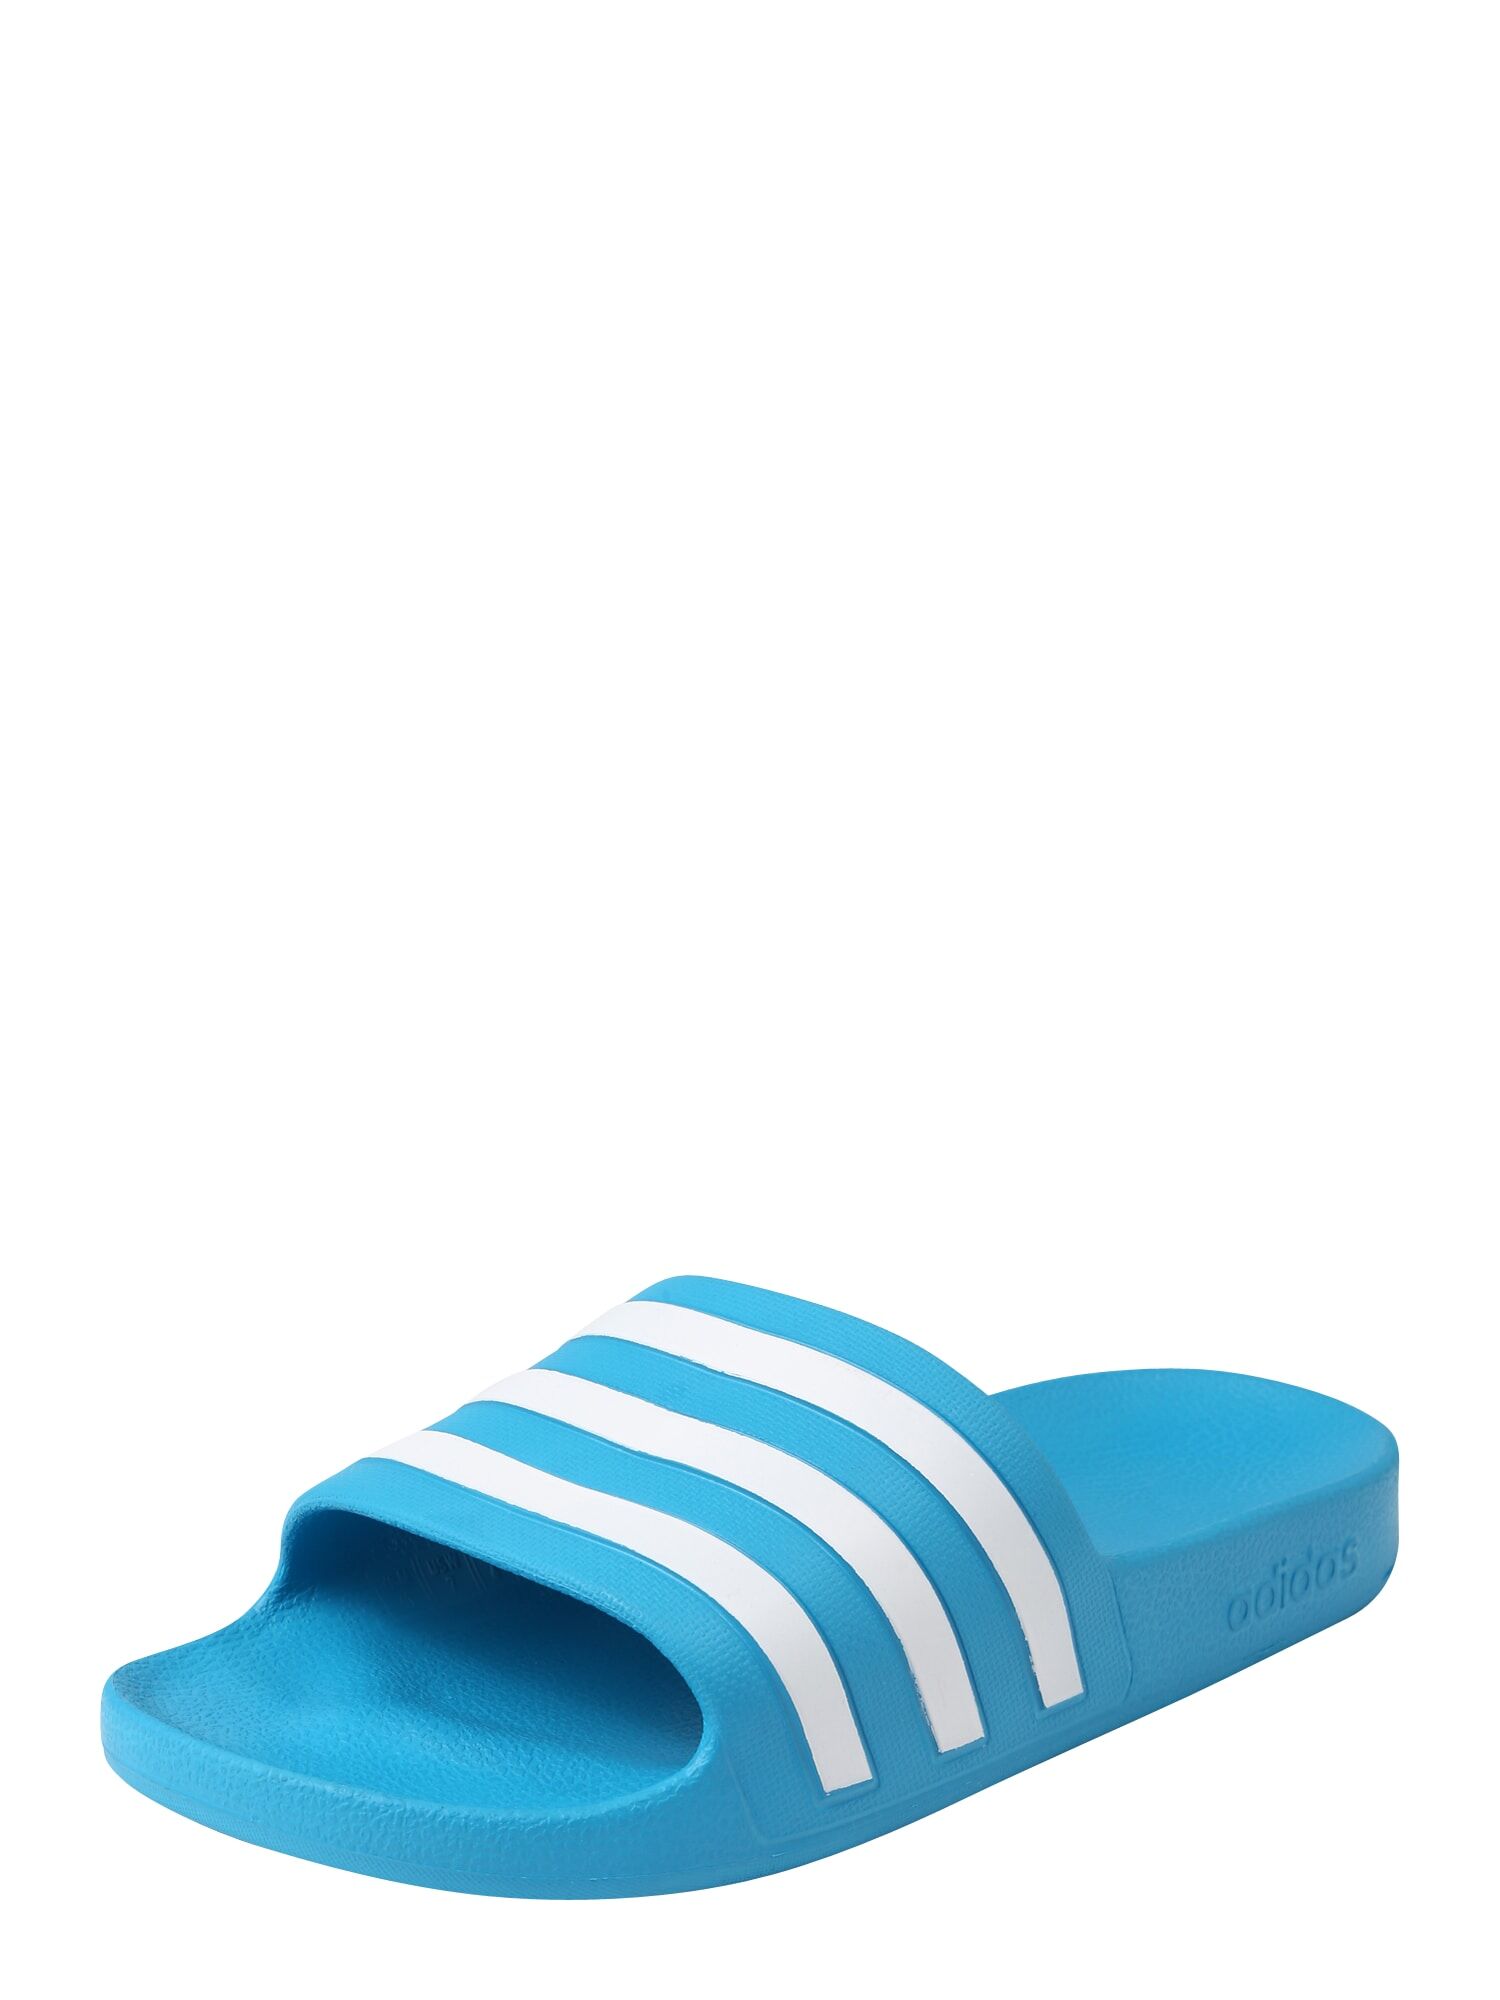 ADIDAS PERFORMANCE Scarpe da spiaggia / da bagno 'Adilette' Blu